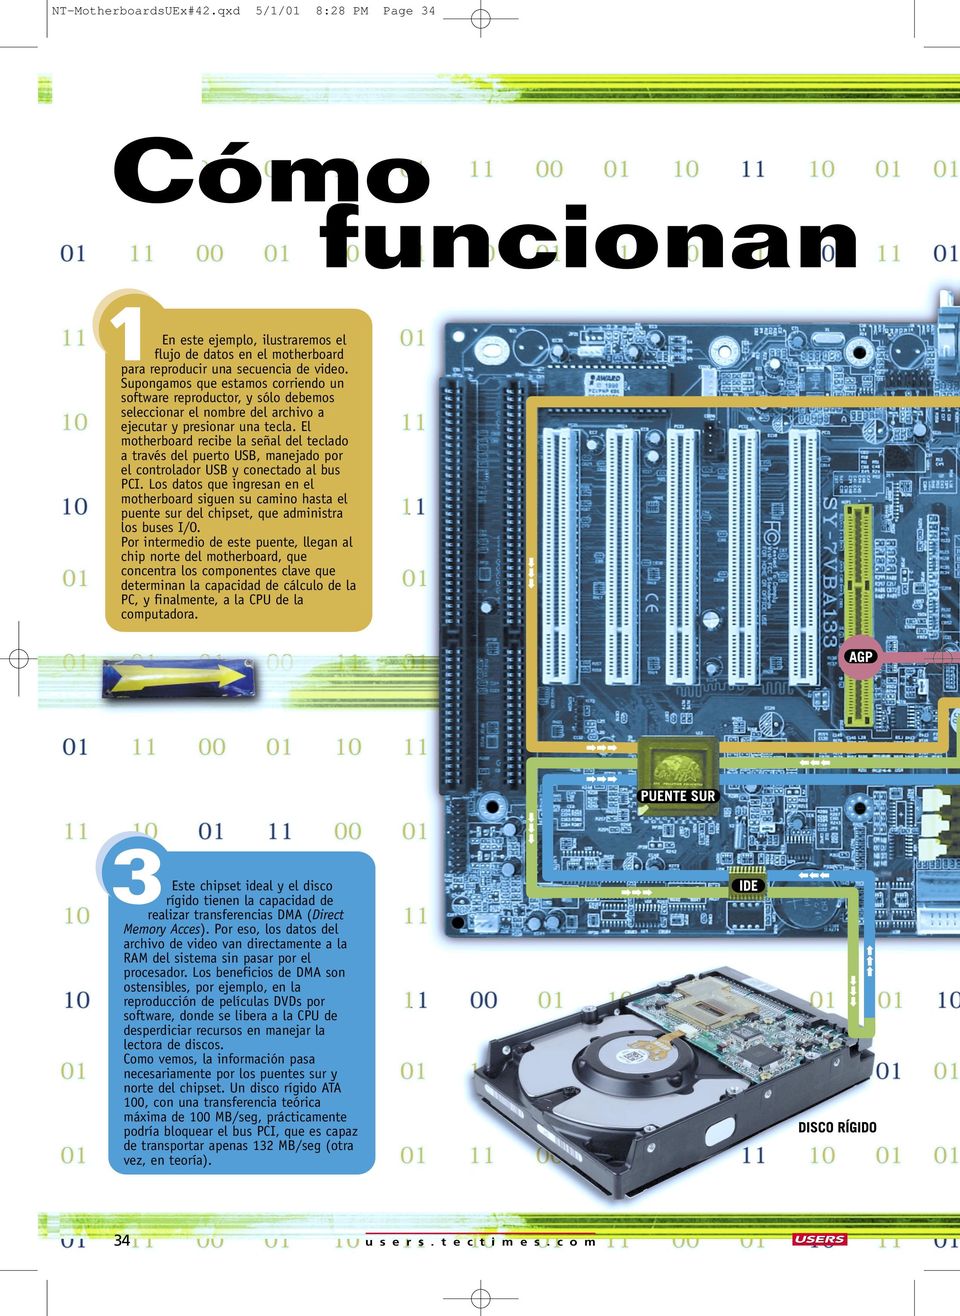 El motherboard recibe la señal del teclado a través del puerto USB, manejado por el controlador USB y conectado al bus PCI.